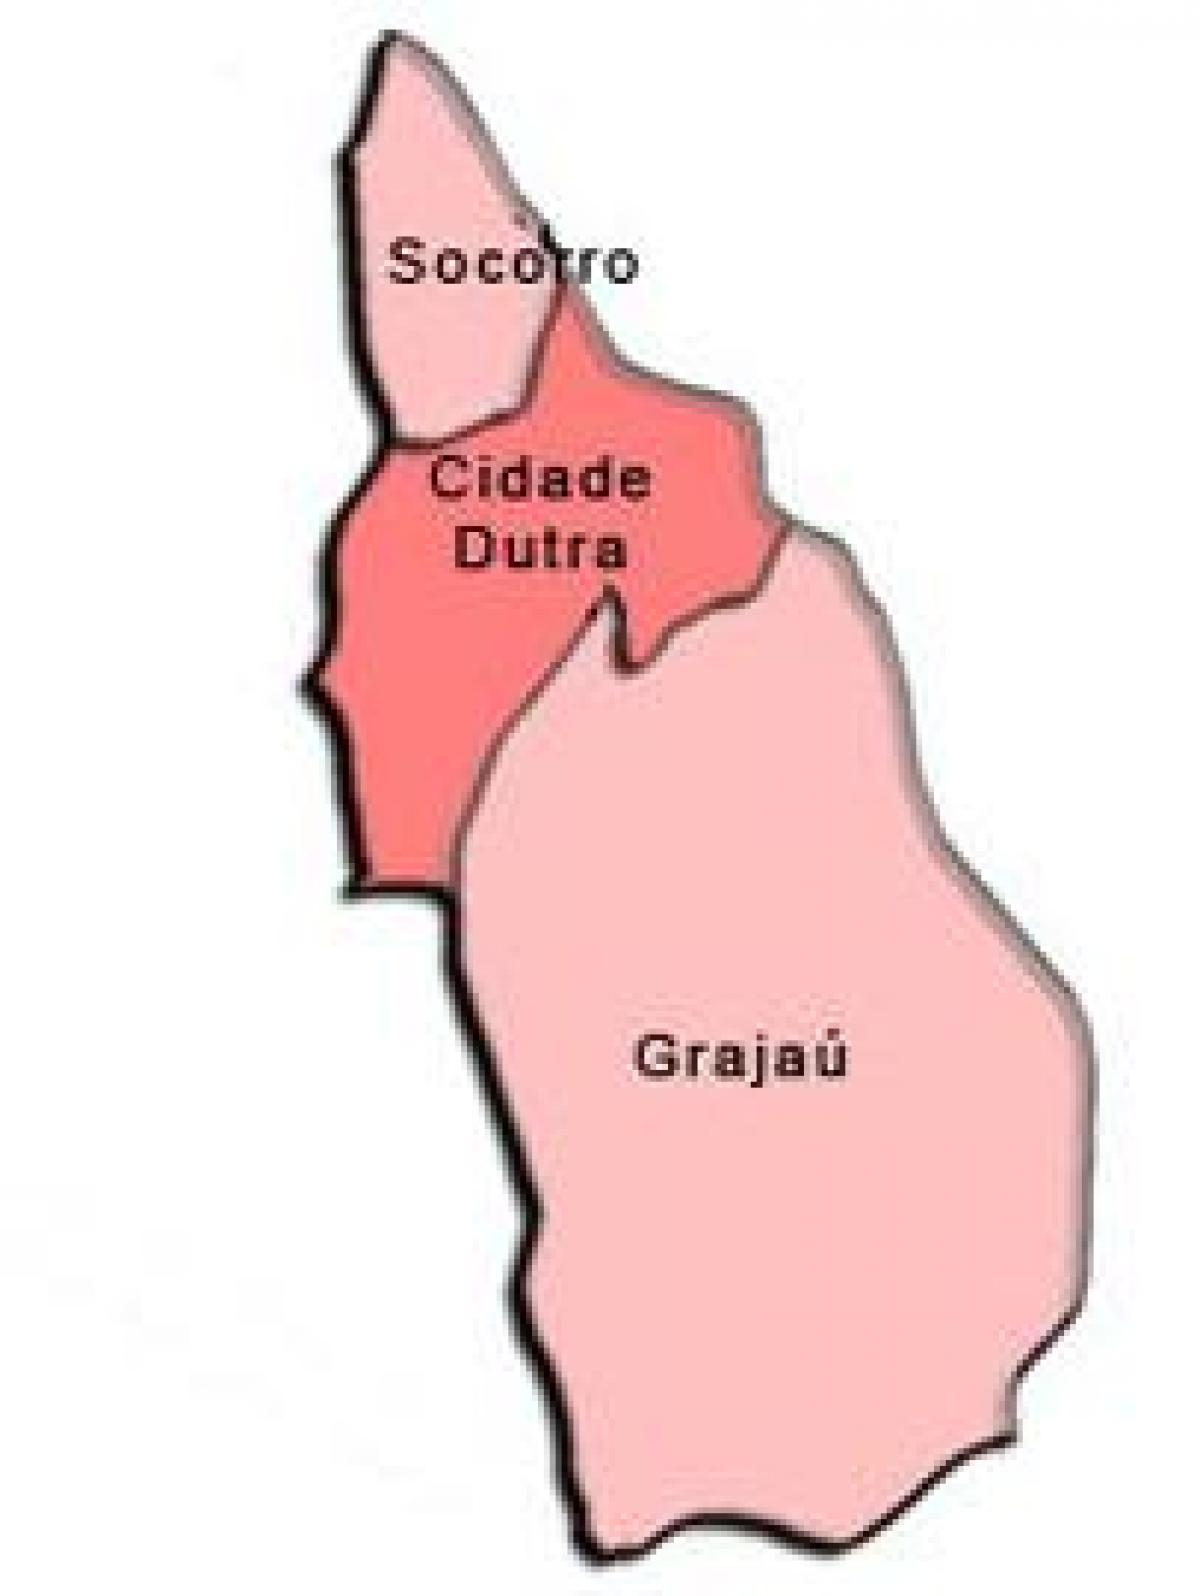 แผนที่ของ Capela ทำ Socorro รายการย่อยขอ prefecture